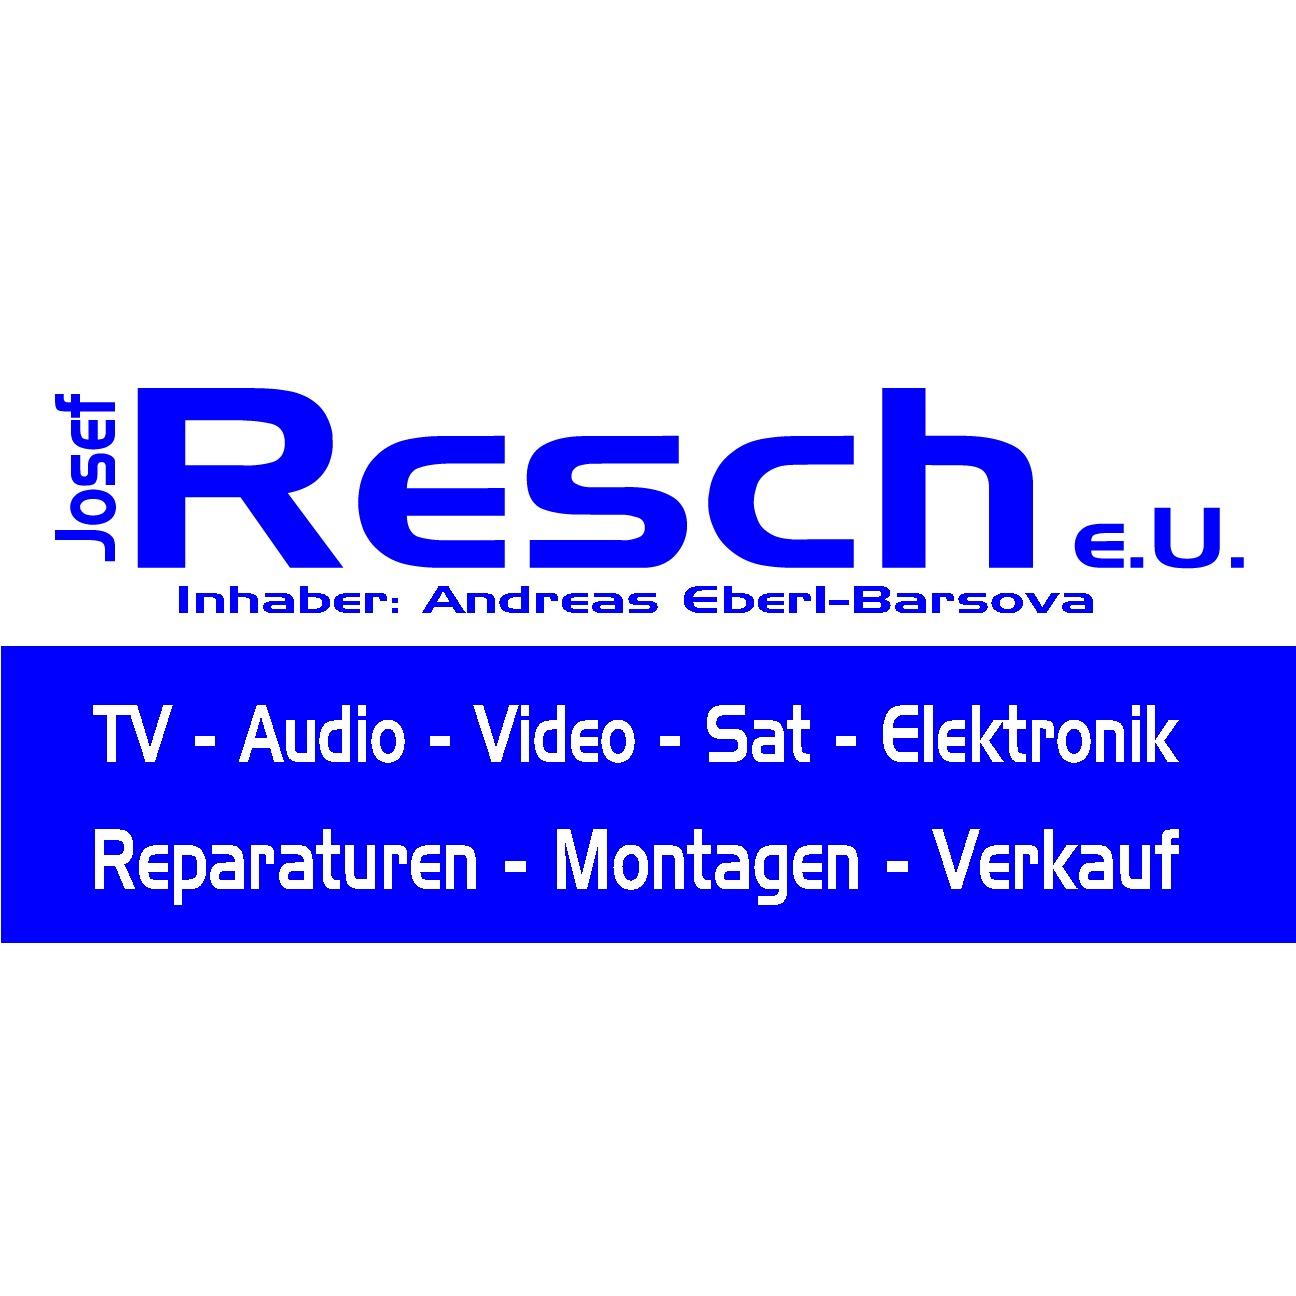 Josef Resch e.U. Inh. Andreas Eberl-Barsova Logo